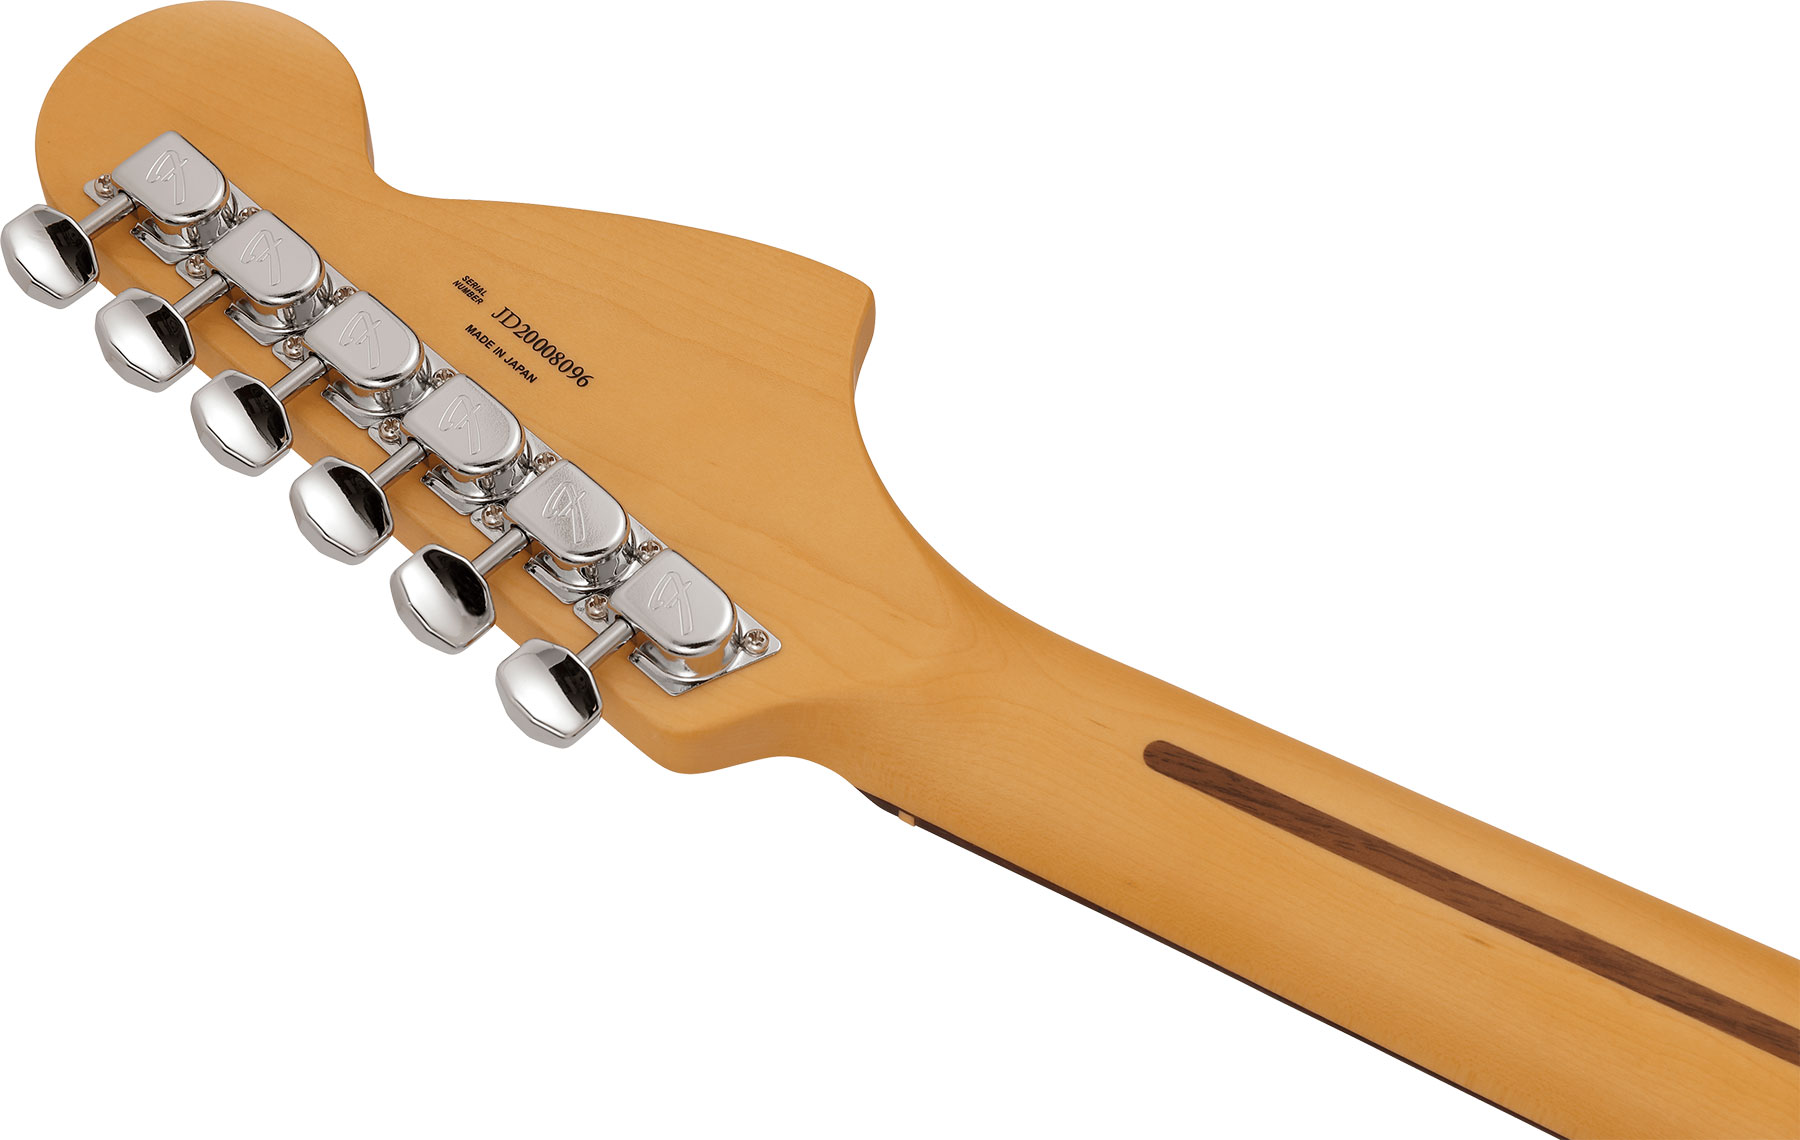 Fender Mustang Reverse Headstock Traditional Ltd Jap Hs Trem Rw - 3-color Sunburst - Str shape electric guitar - Variation 3